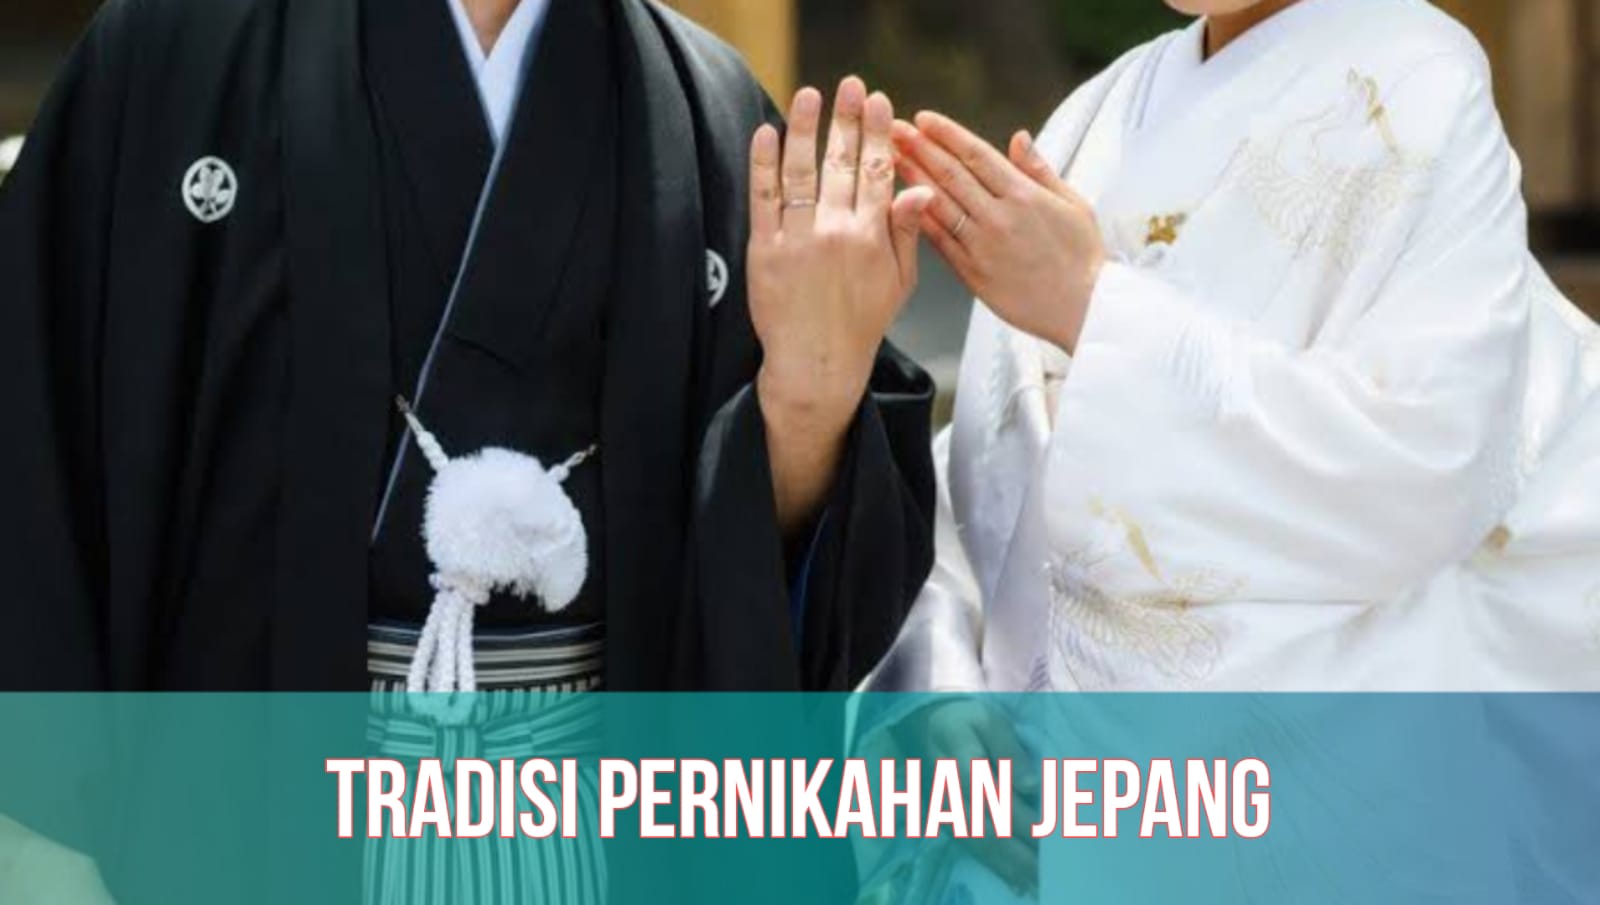 Shinzen Shiki, Tradisi Pernikahan Tradisional Jepang yang Unik dan Penuh Makna